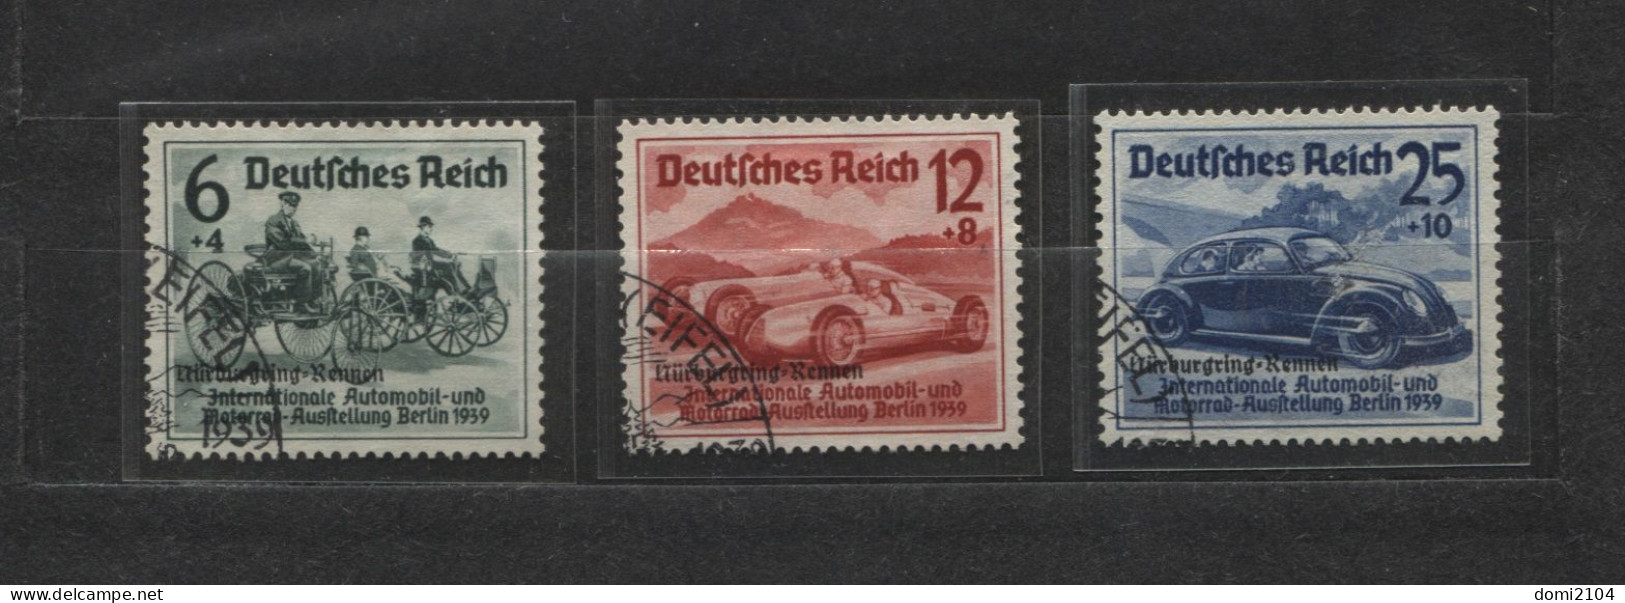 Deutsches Reich # 695-7 Nürburgring-Rennen Überdruckserie Sonderstempel - Ungebraucht